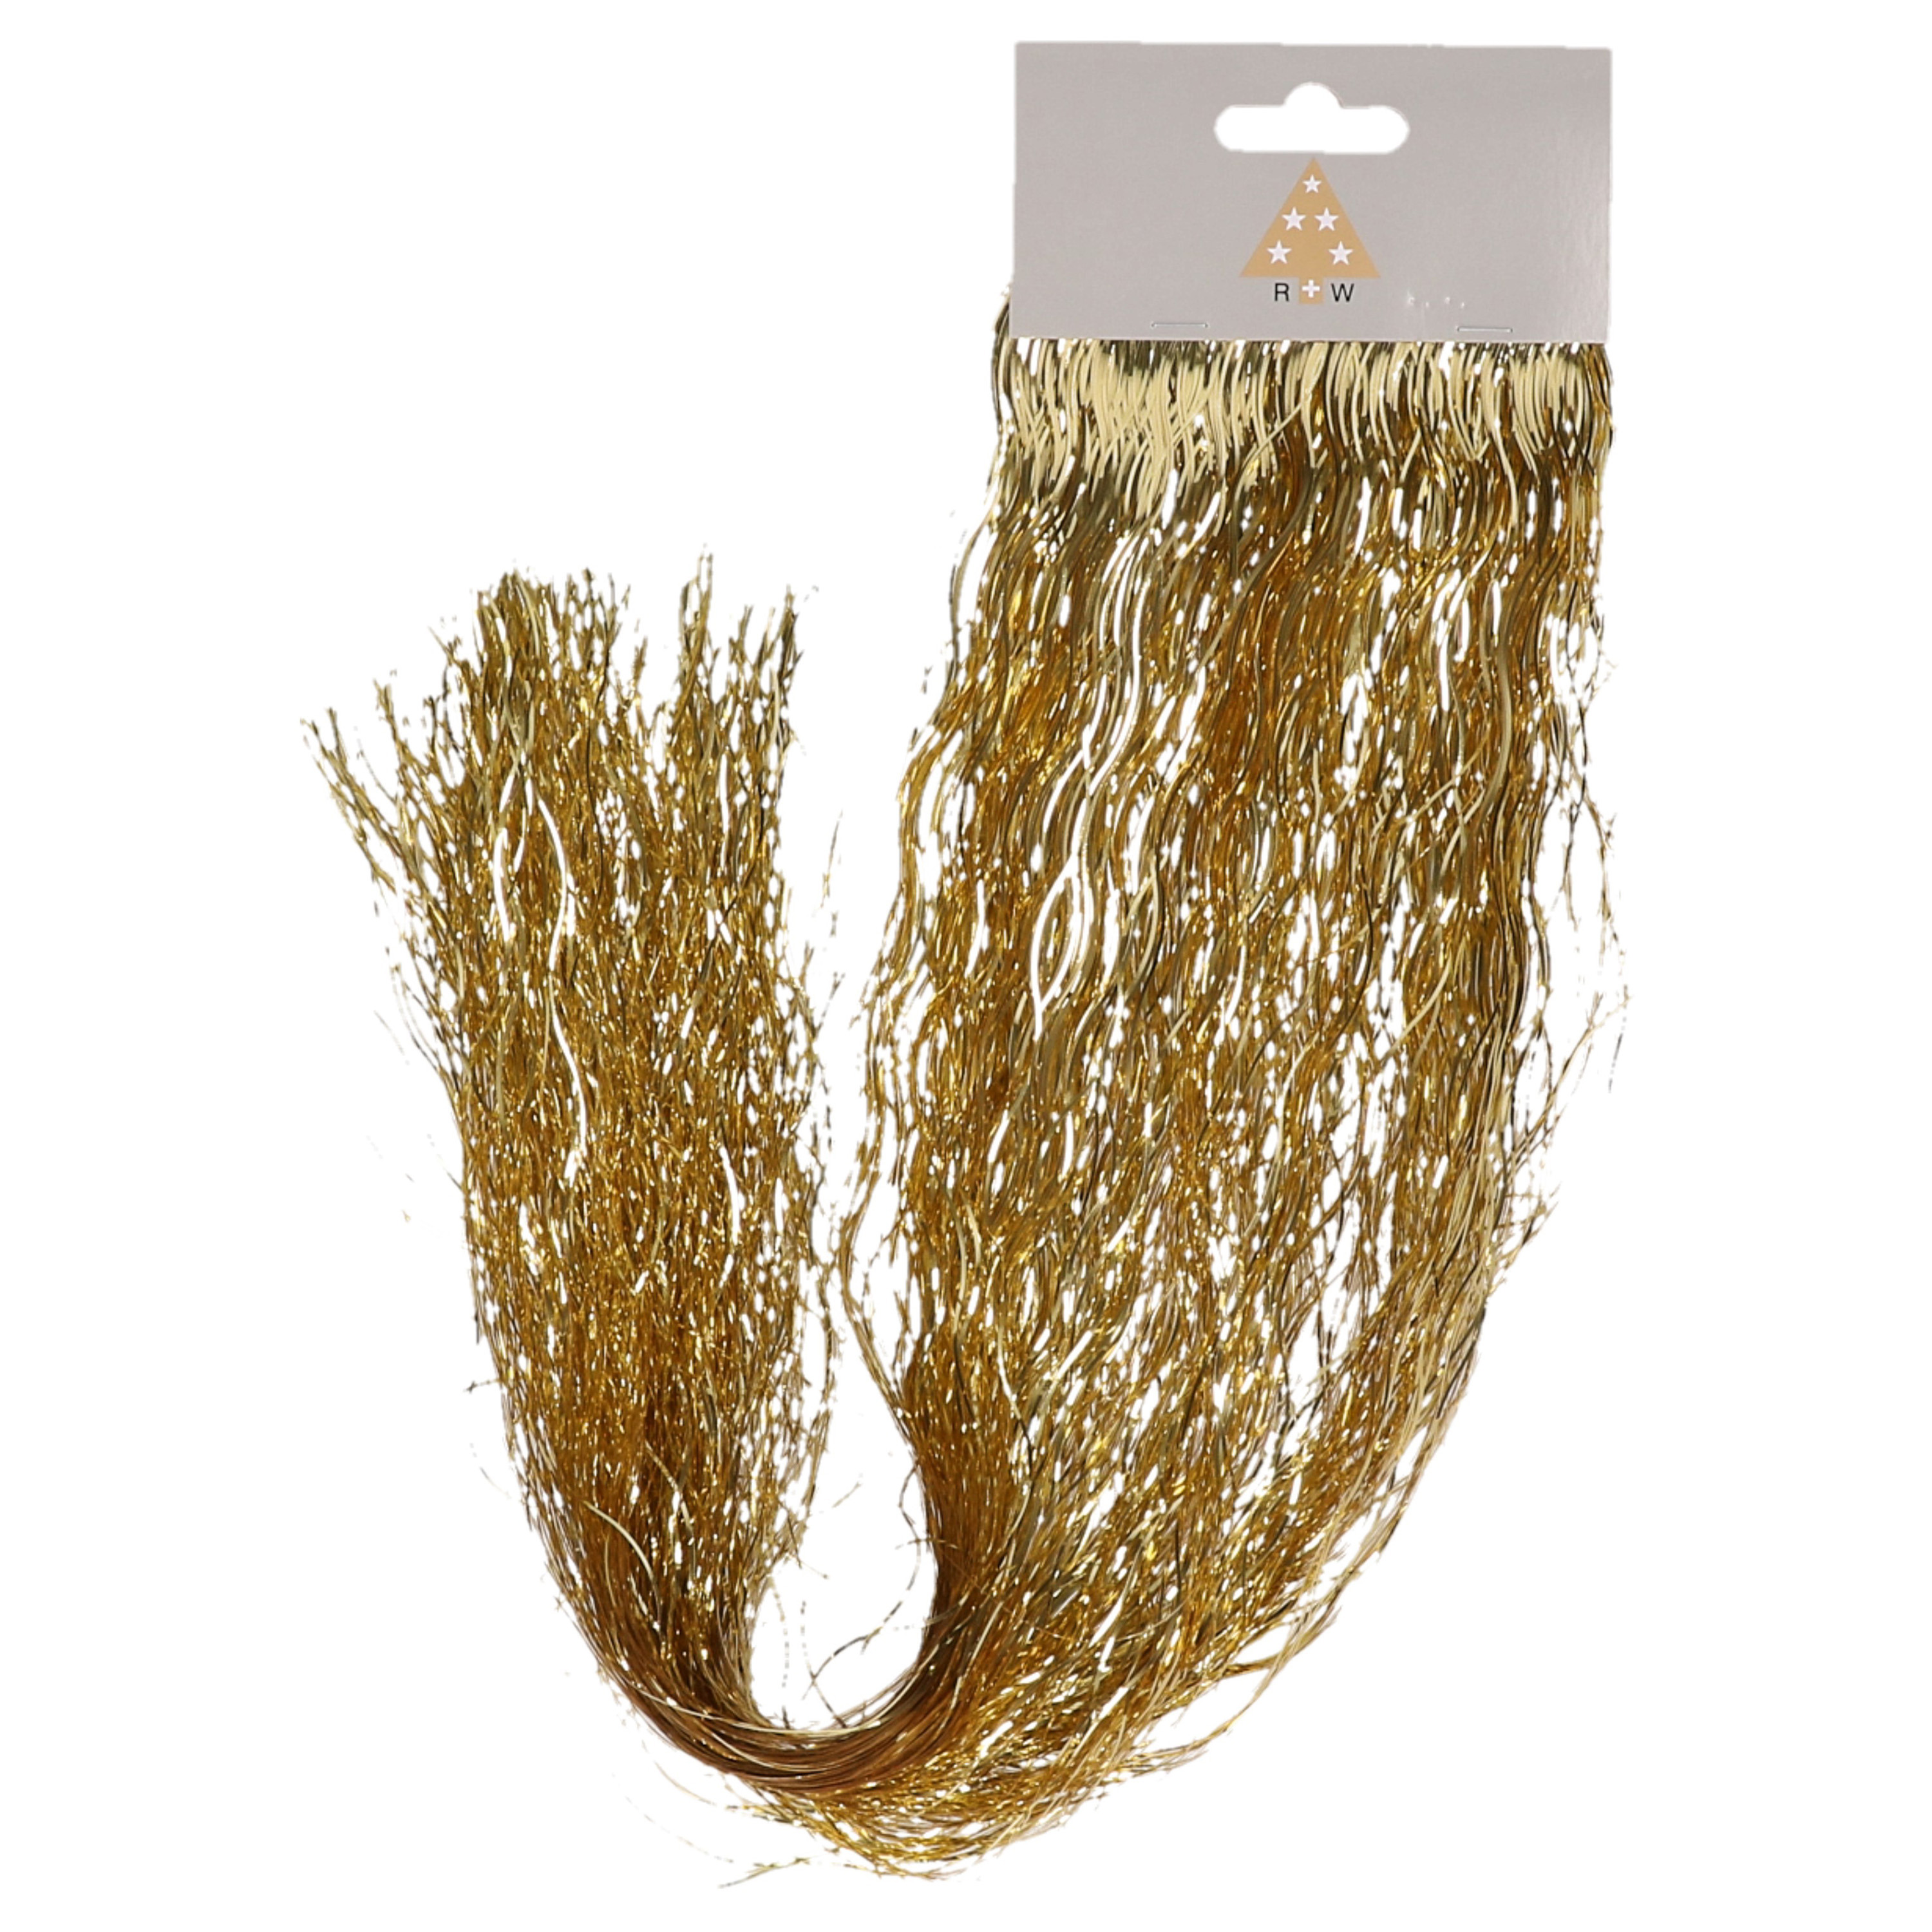 Engelenhaar-lametta slierten golf goud 50 cm folie kerstboomversiering